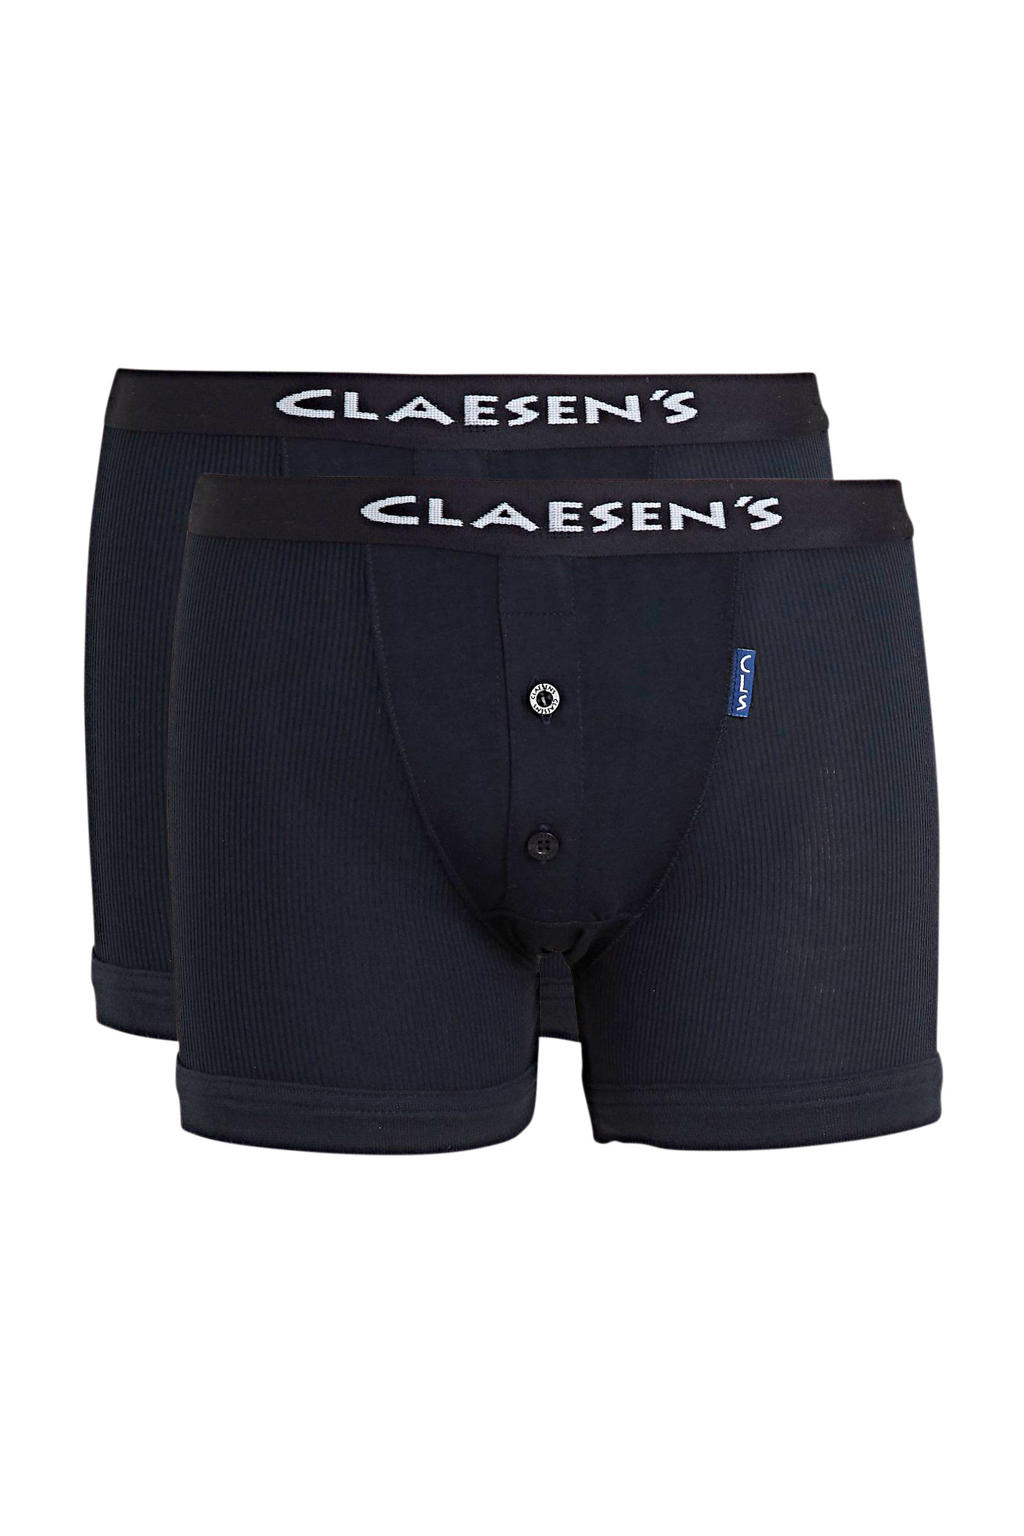 Claesen's   boxershort - set van 2 donkerblauw